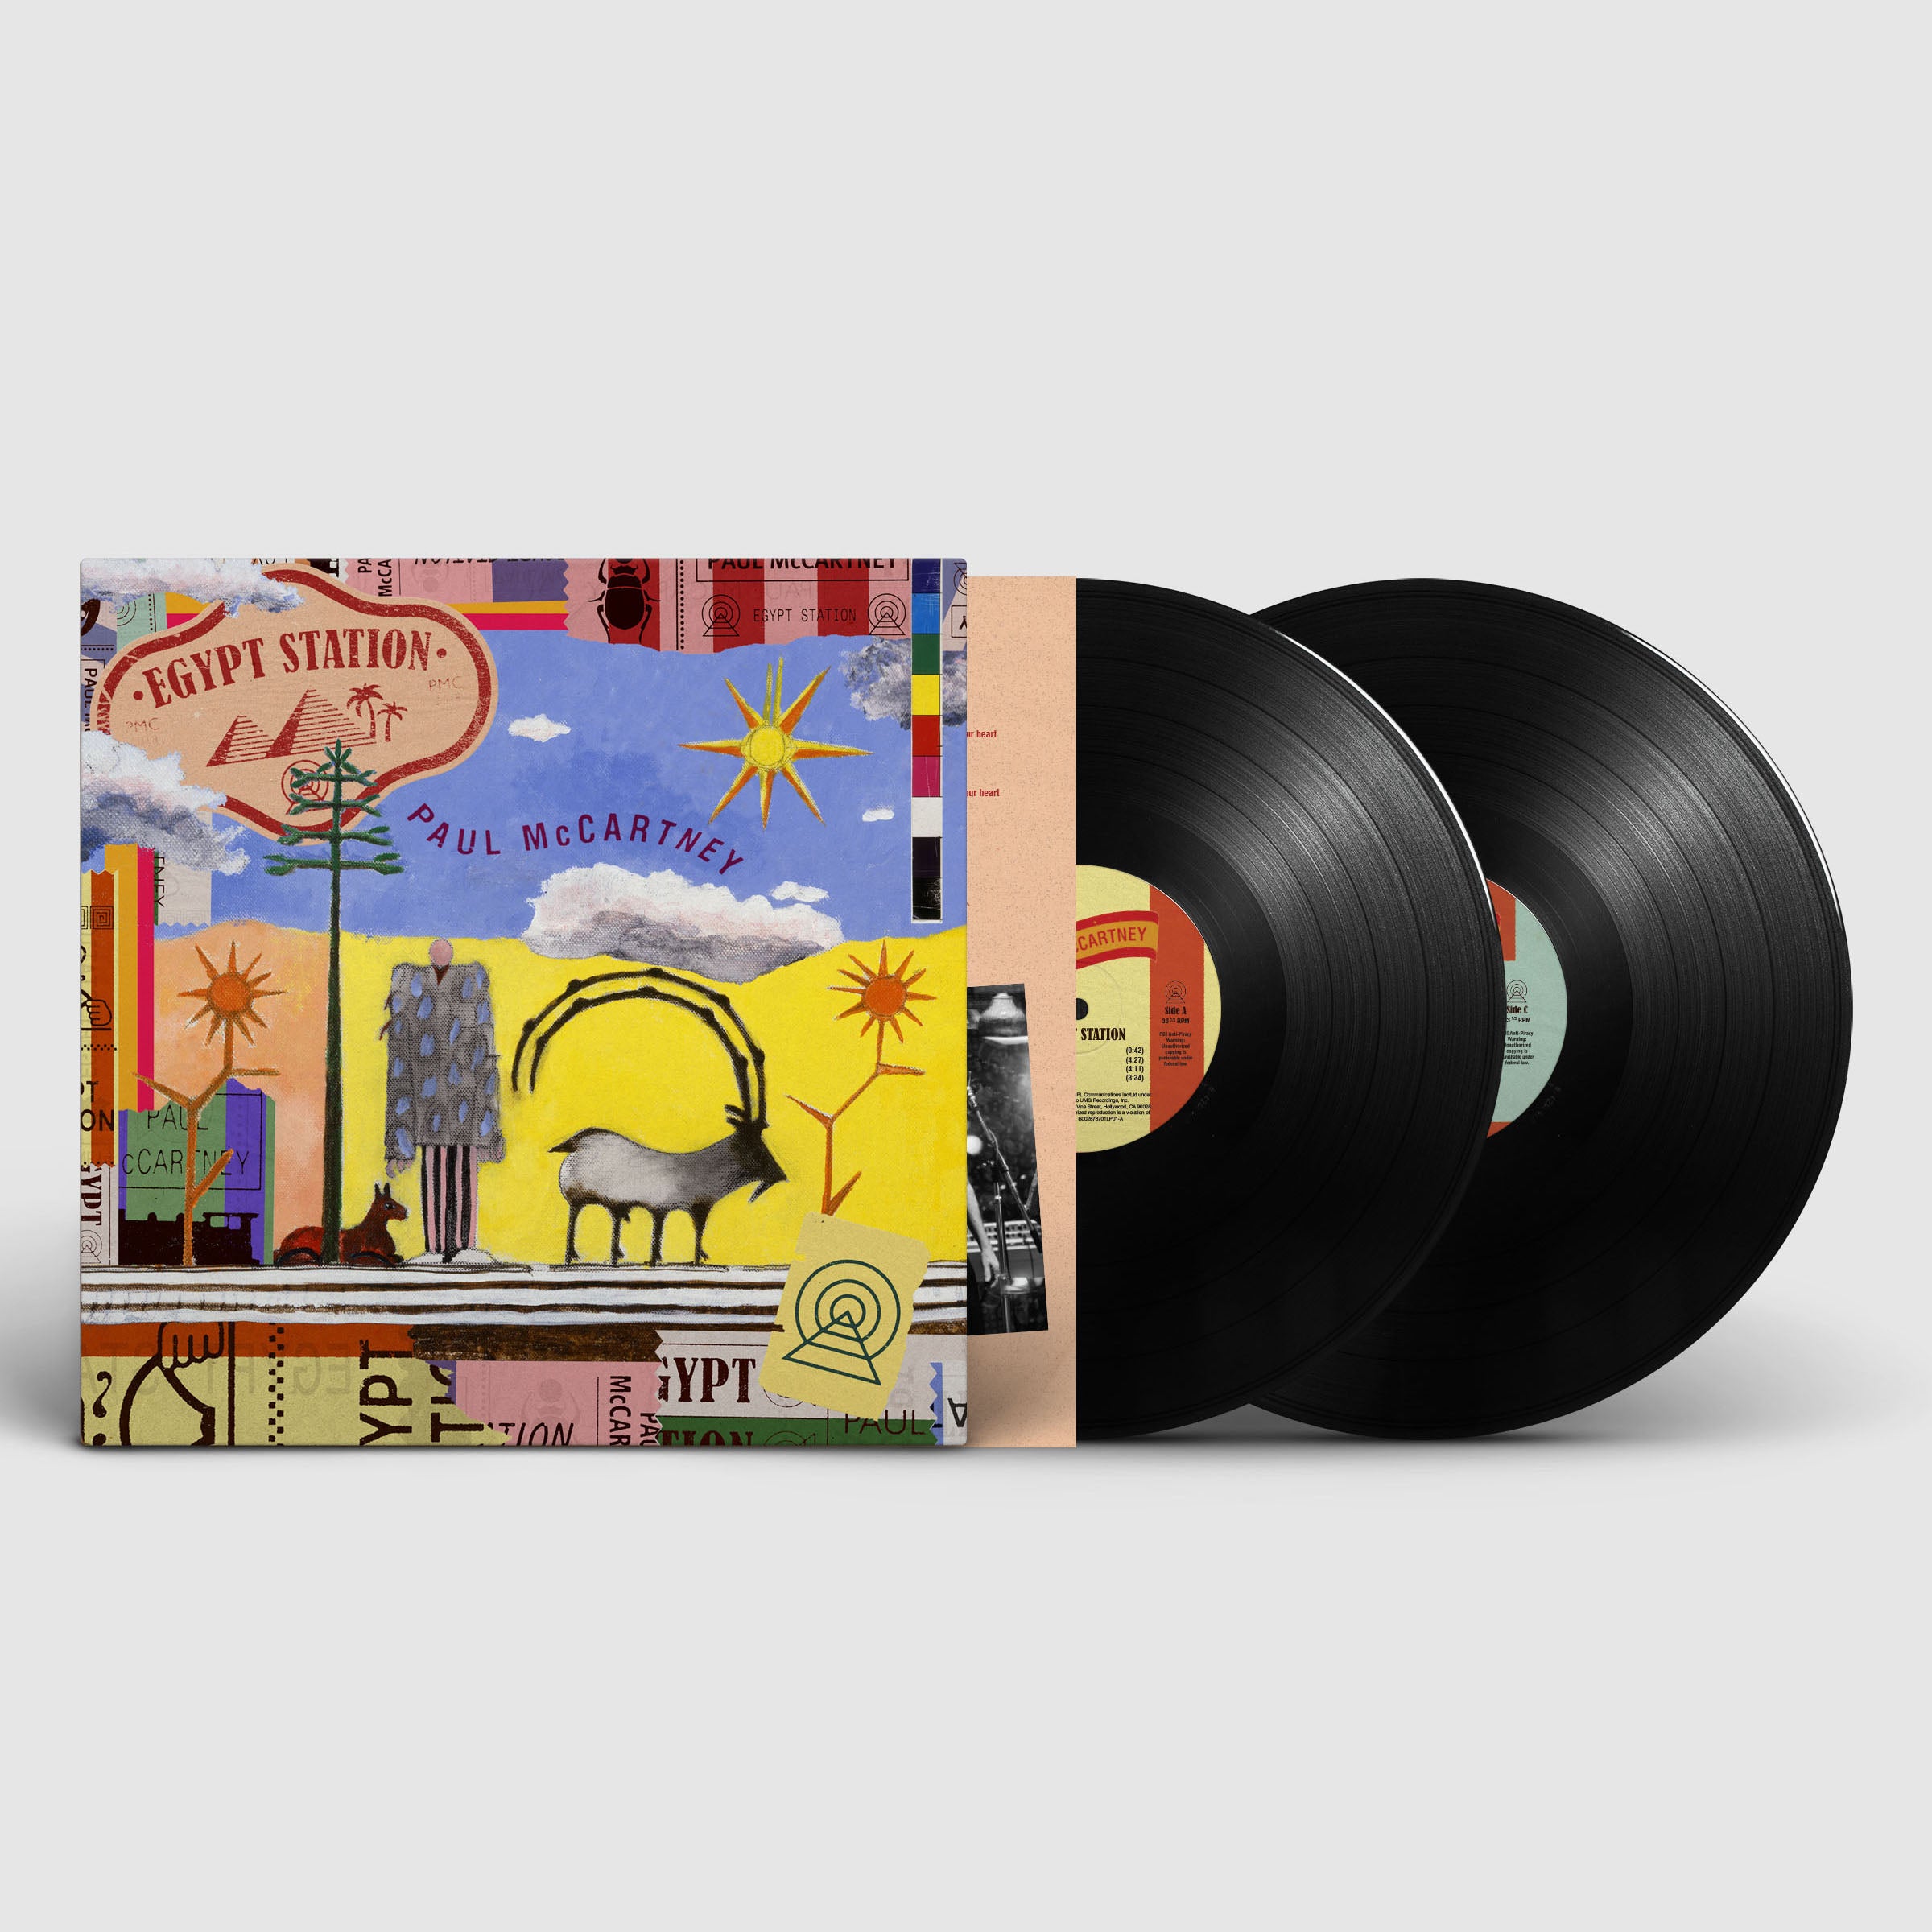 Paul McCartney, Wings - Egypt Station Standard Vinyl 2LP